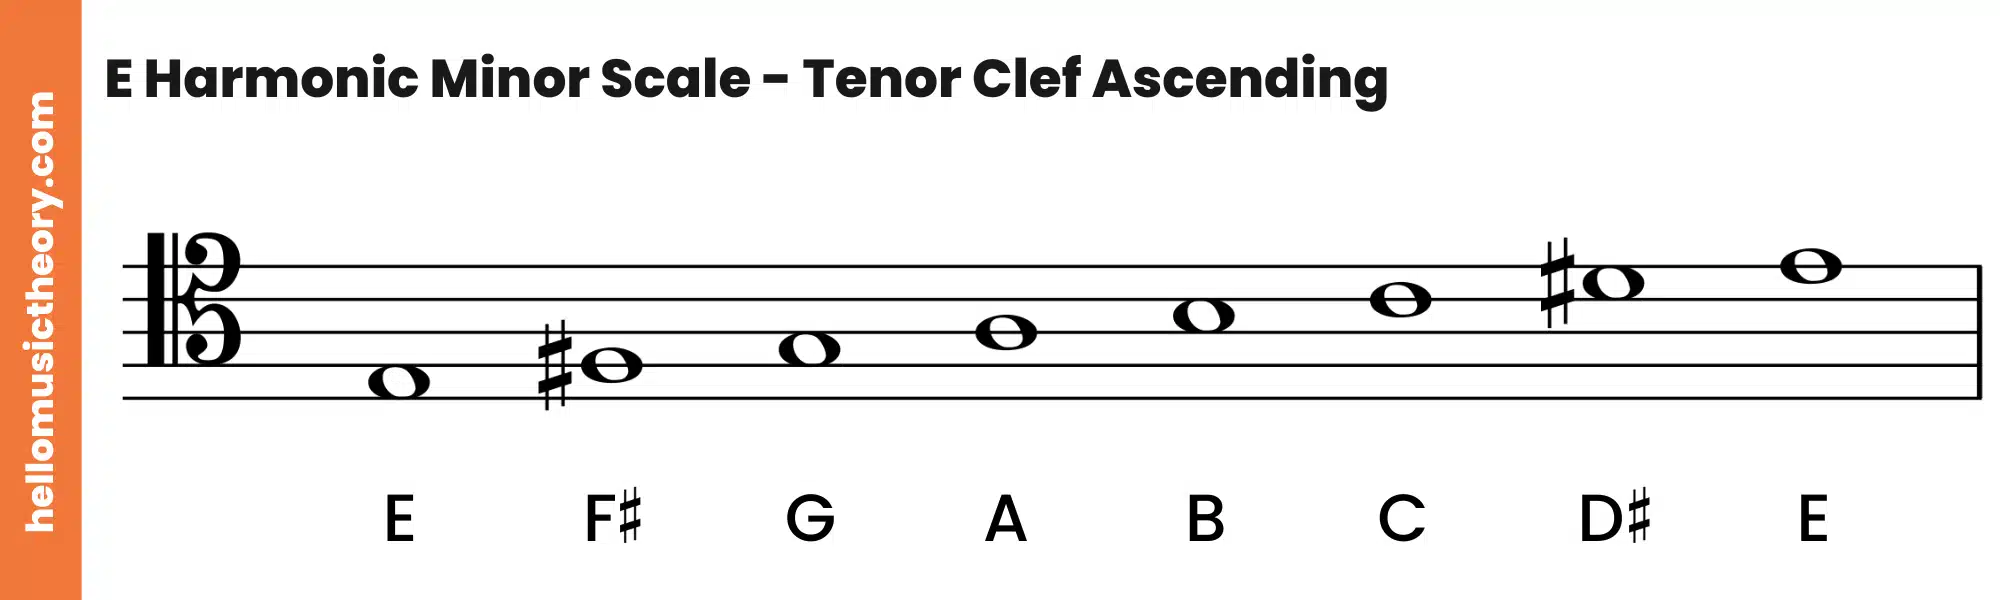 E Harmonic Minor Scale Tenor Clef Ascending